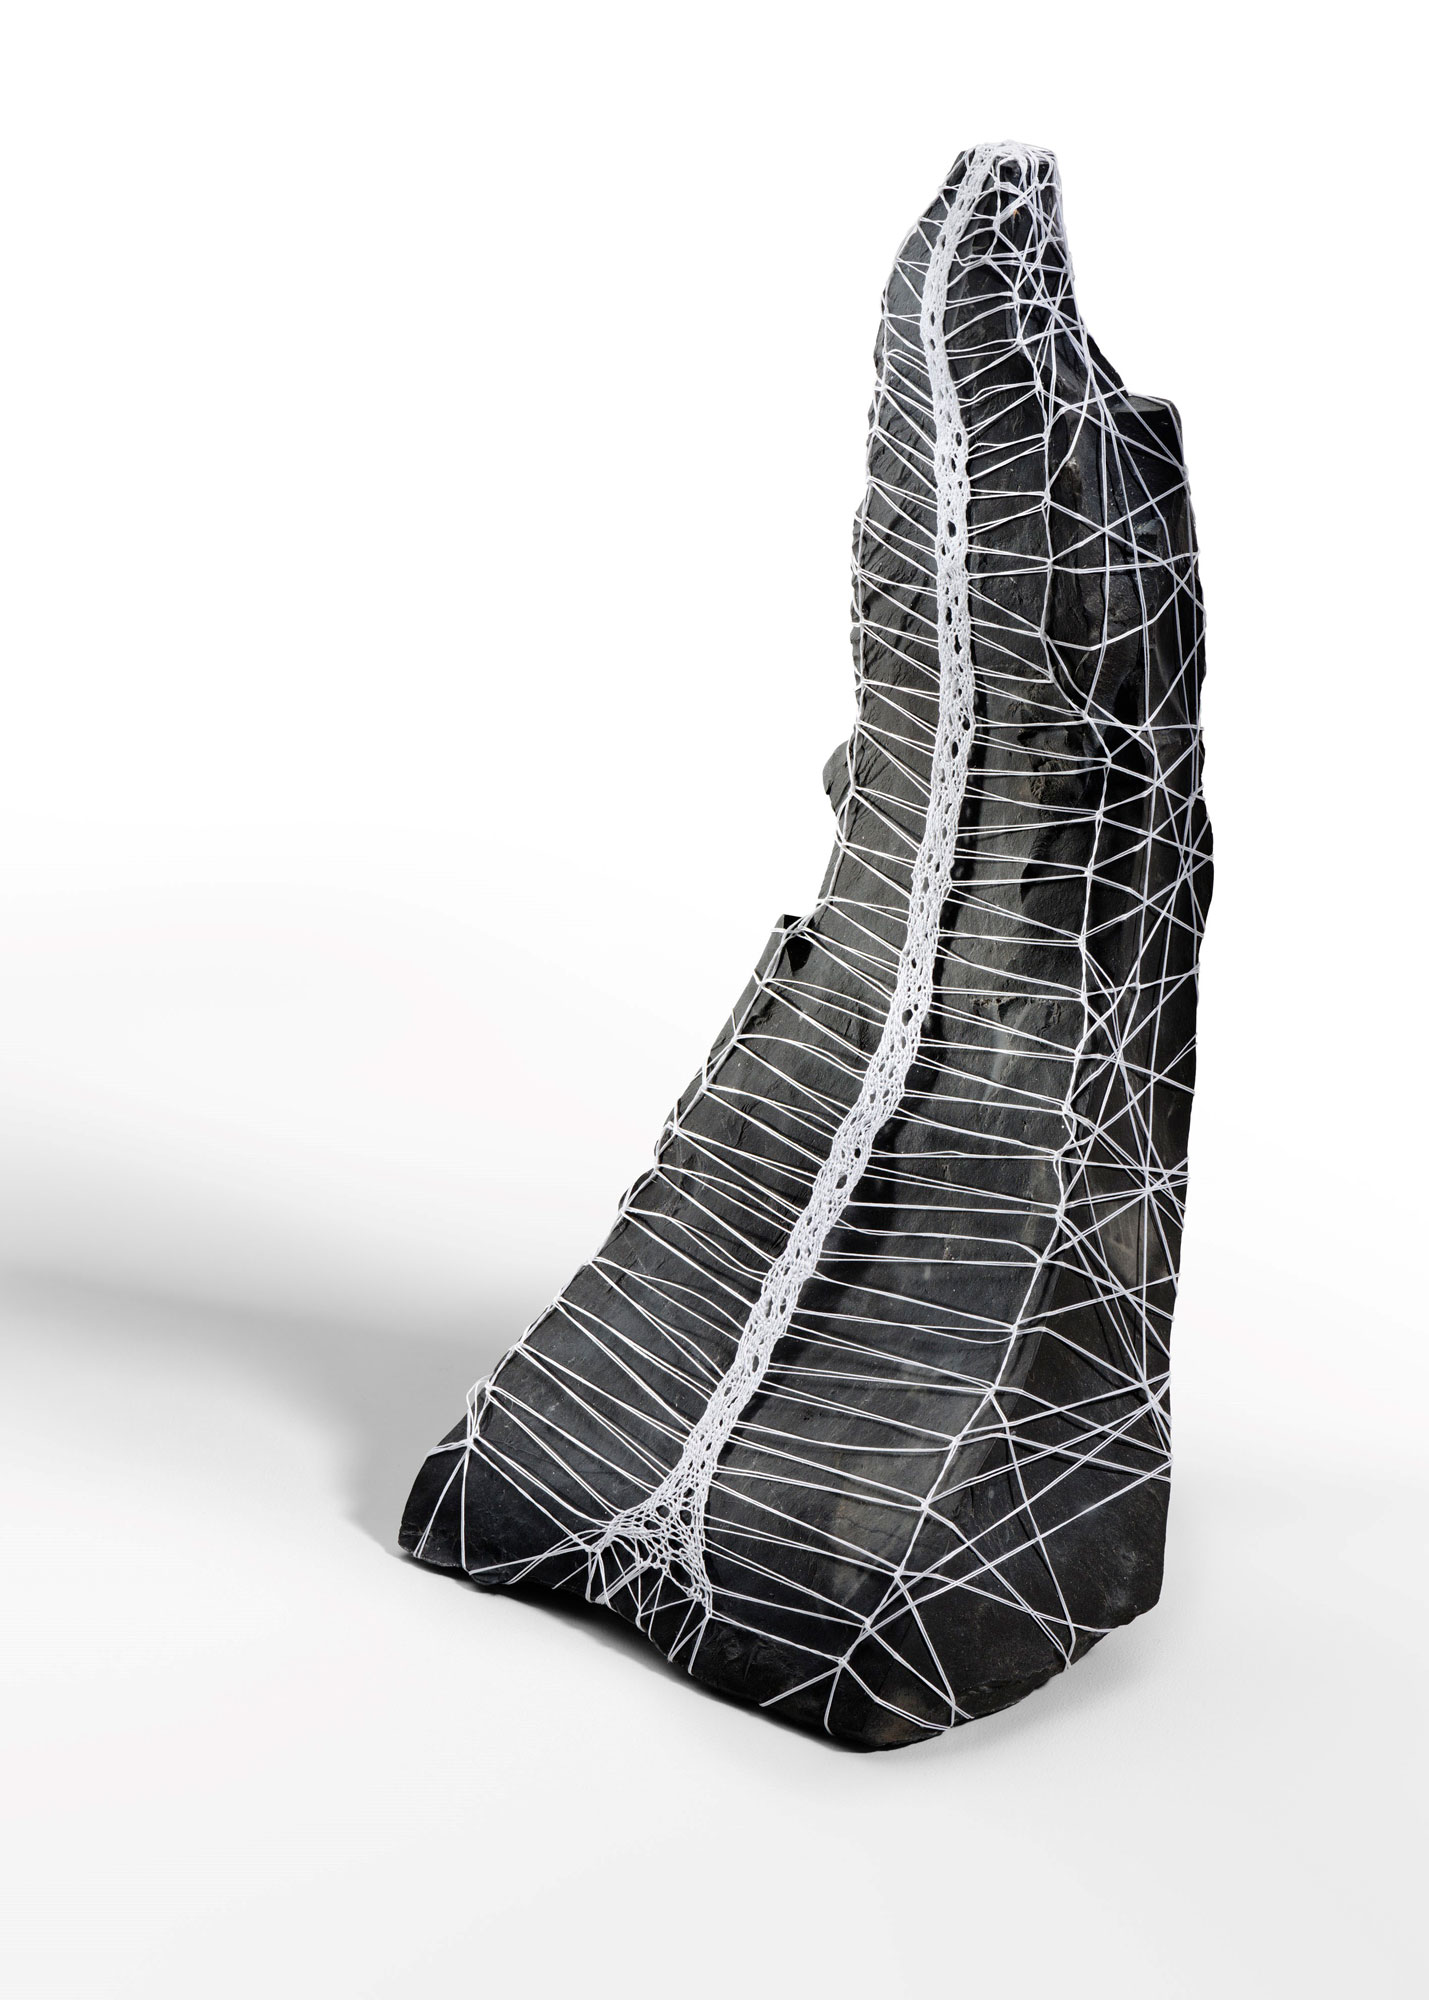 Métamorphose - dentelle au fuseaux, fil glacé, marbre noir de golzinne - 9 x 8 x 13 cm - 2019 Photo : Ph de Formanoir @Hélène de Gottal